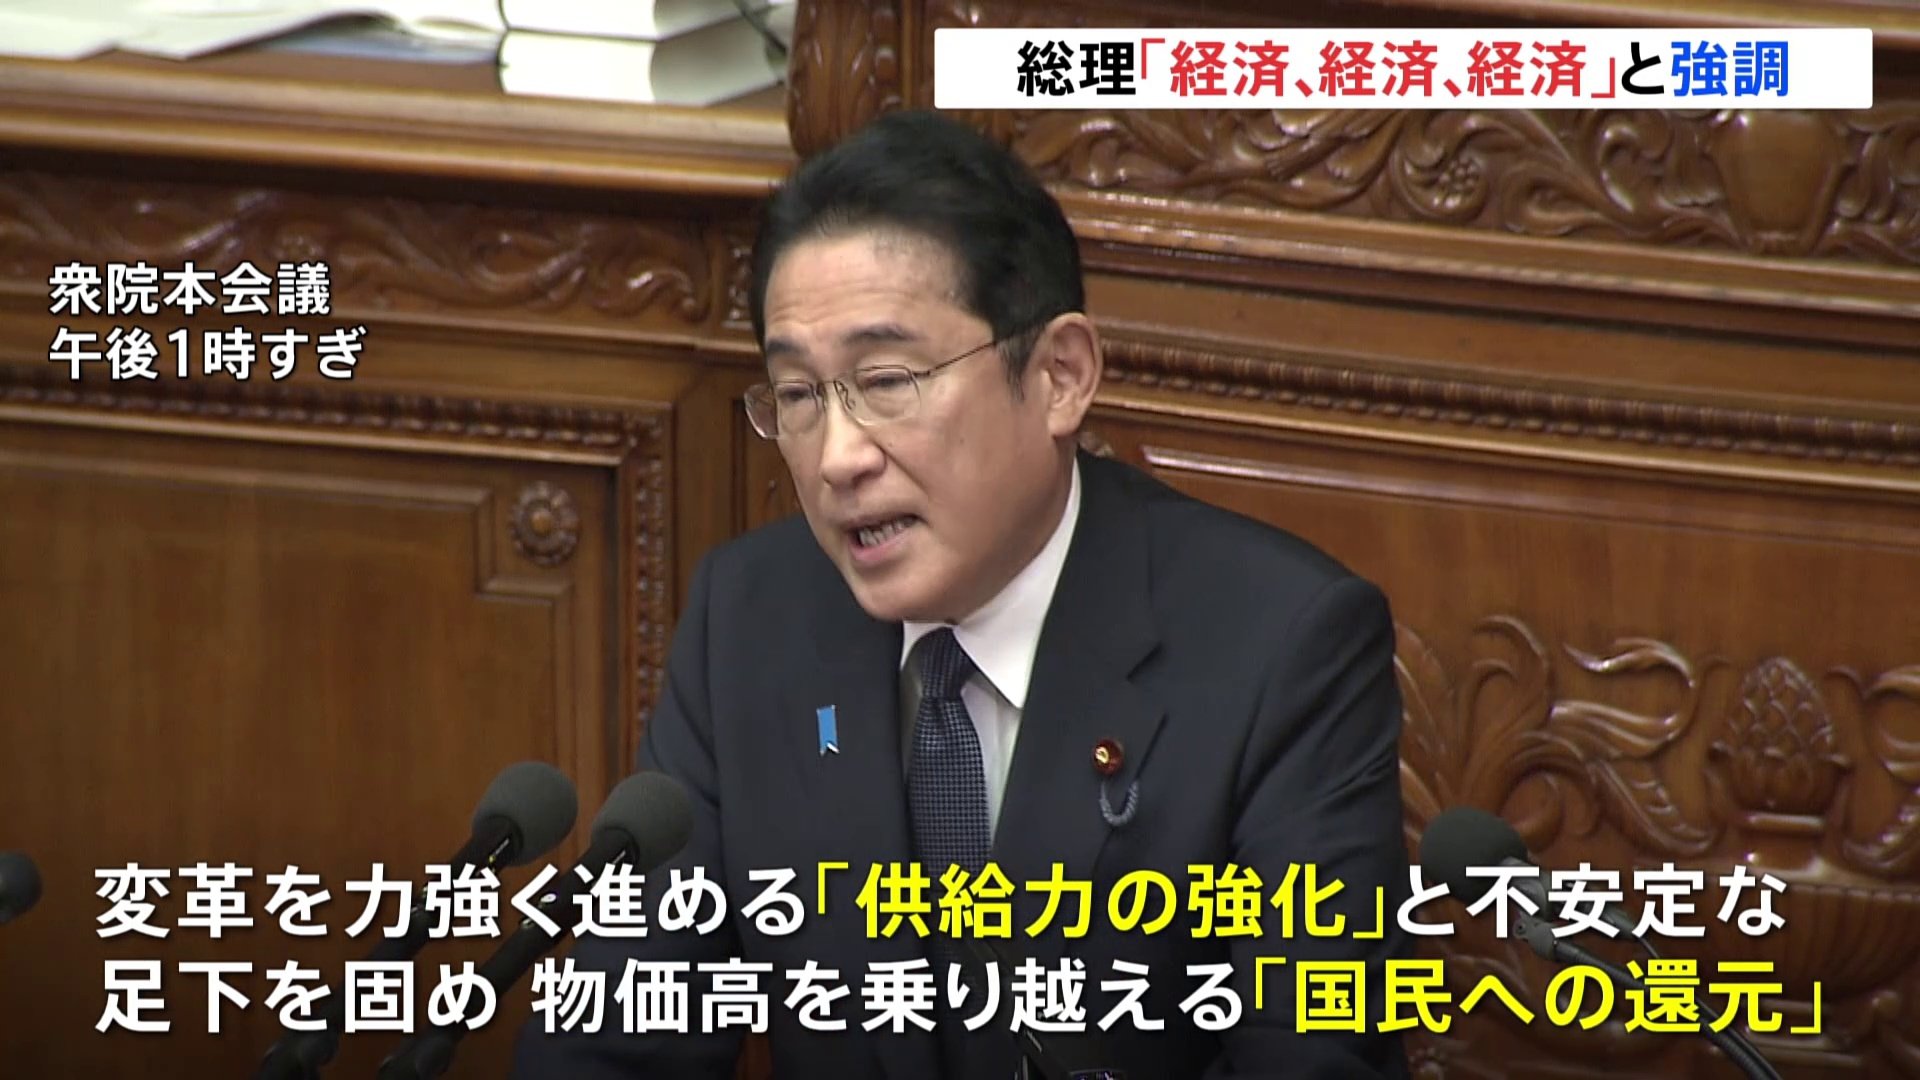 「経済、経済、経済」と連呼　岸田総理が所信表明演説で「供給力の強化」と「国民への還元」を強調